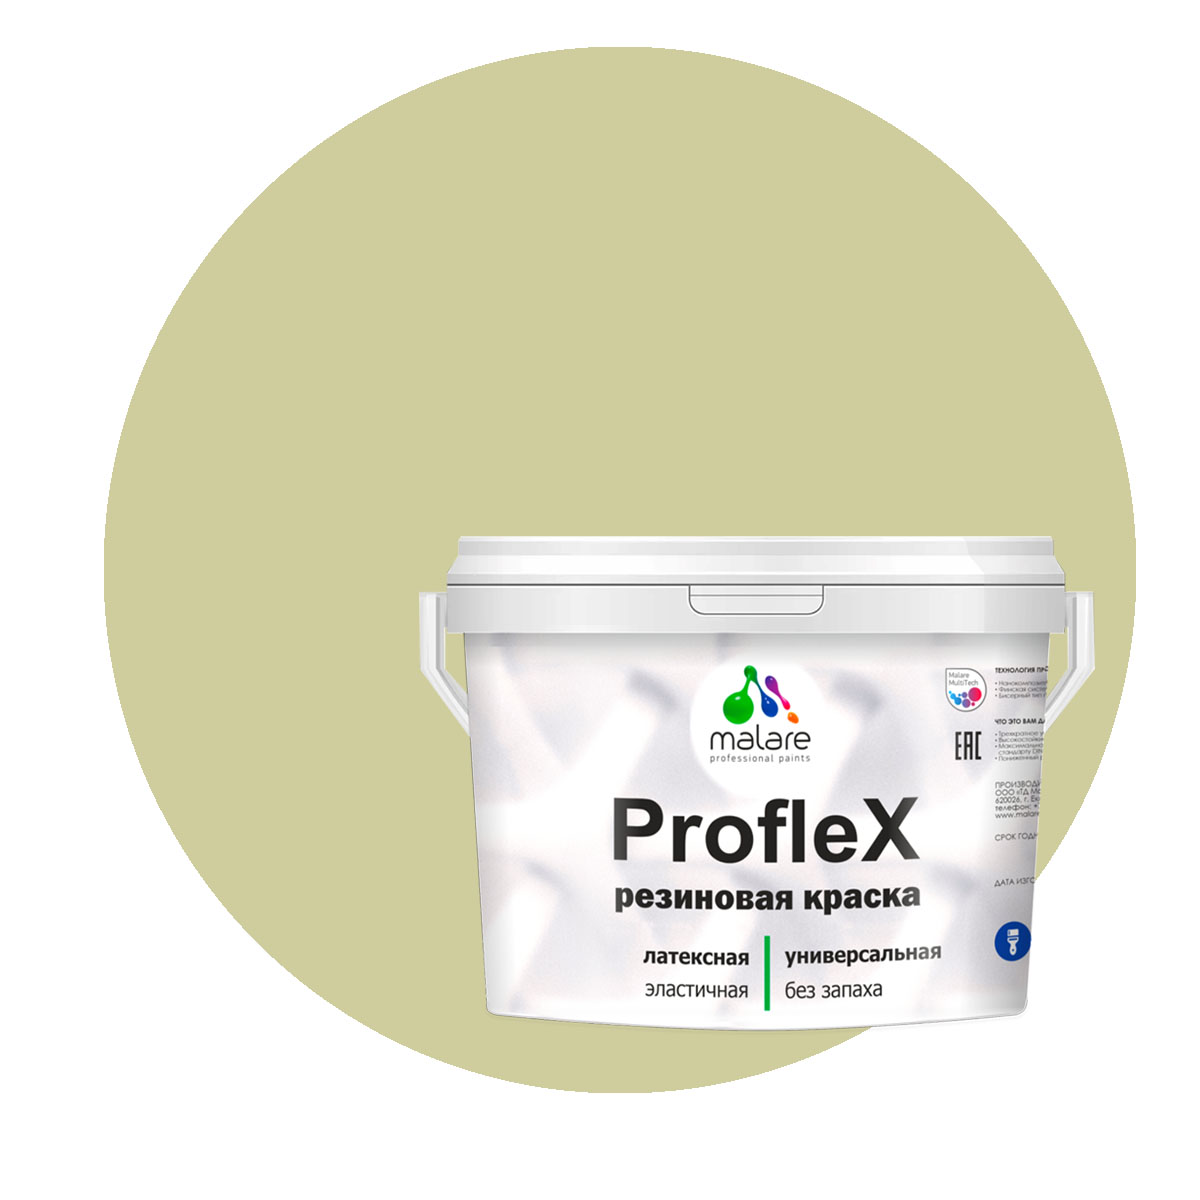 Краска Malare ProfleX для фасадов, интерьера, мебели, фисташковый, 2 кг. щелочной очиститель фасадов зданий plex